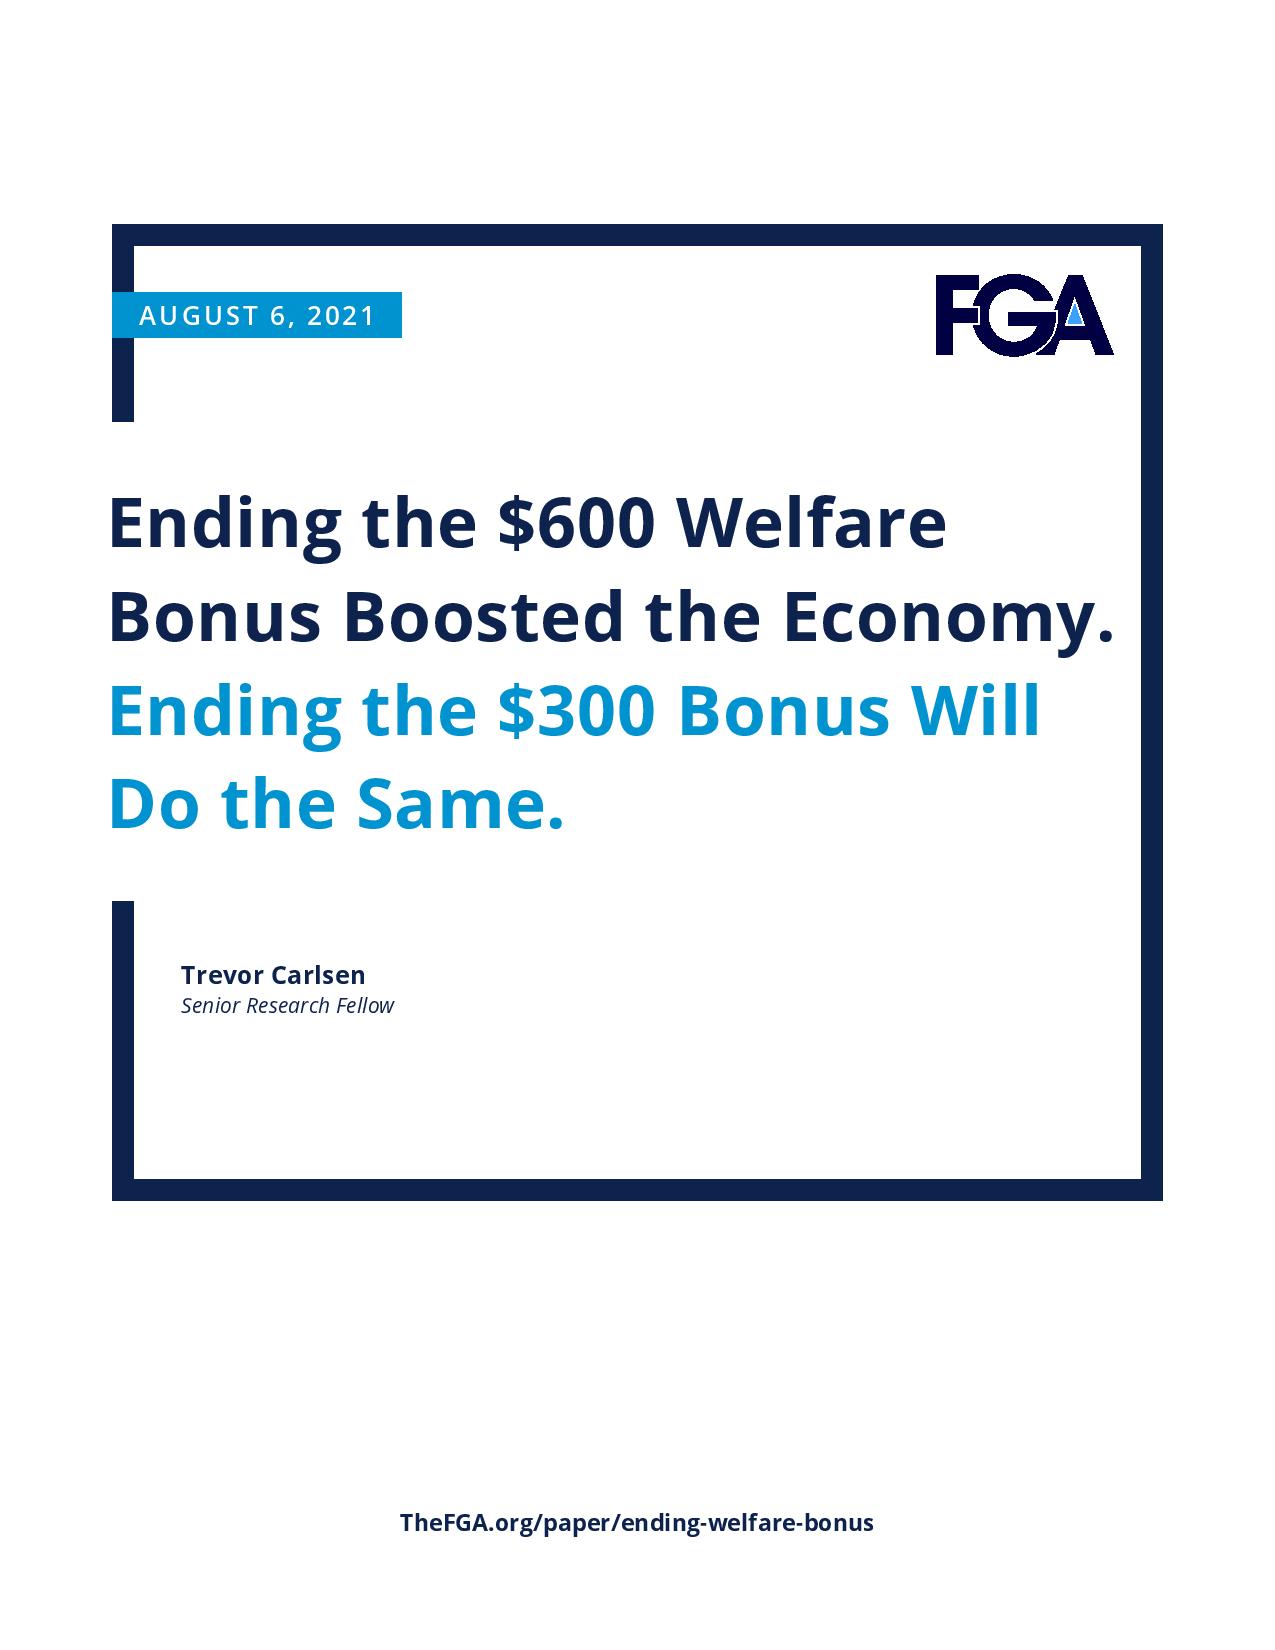 Ending the $600 Welfare Bonus Boosted the Economy. Ending the $300 Bonus Will Do the Same.